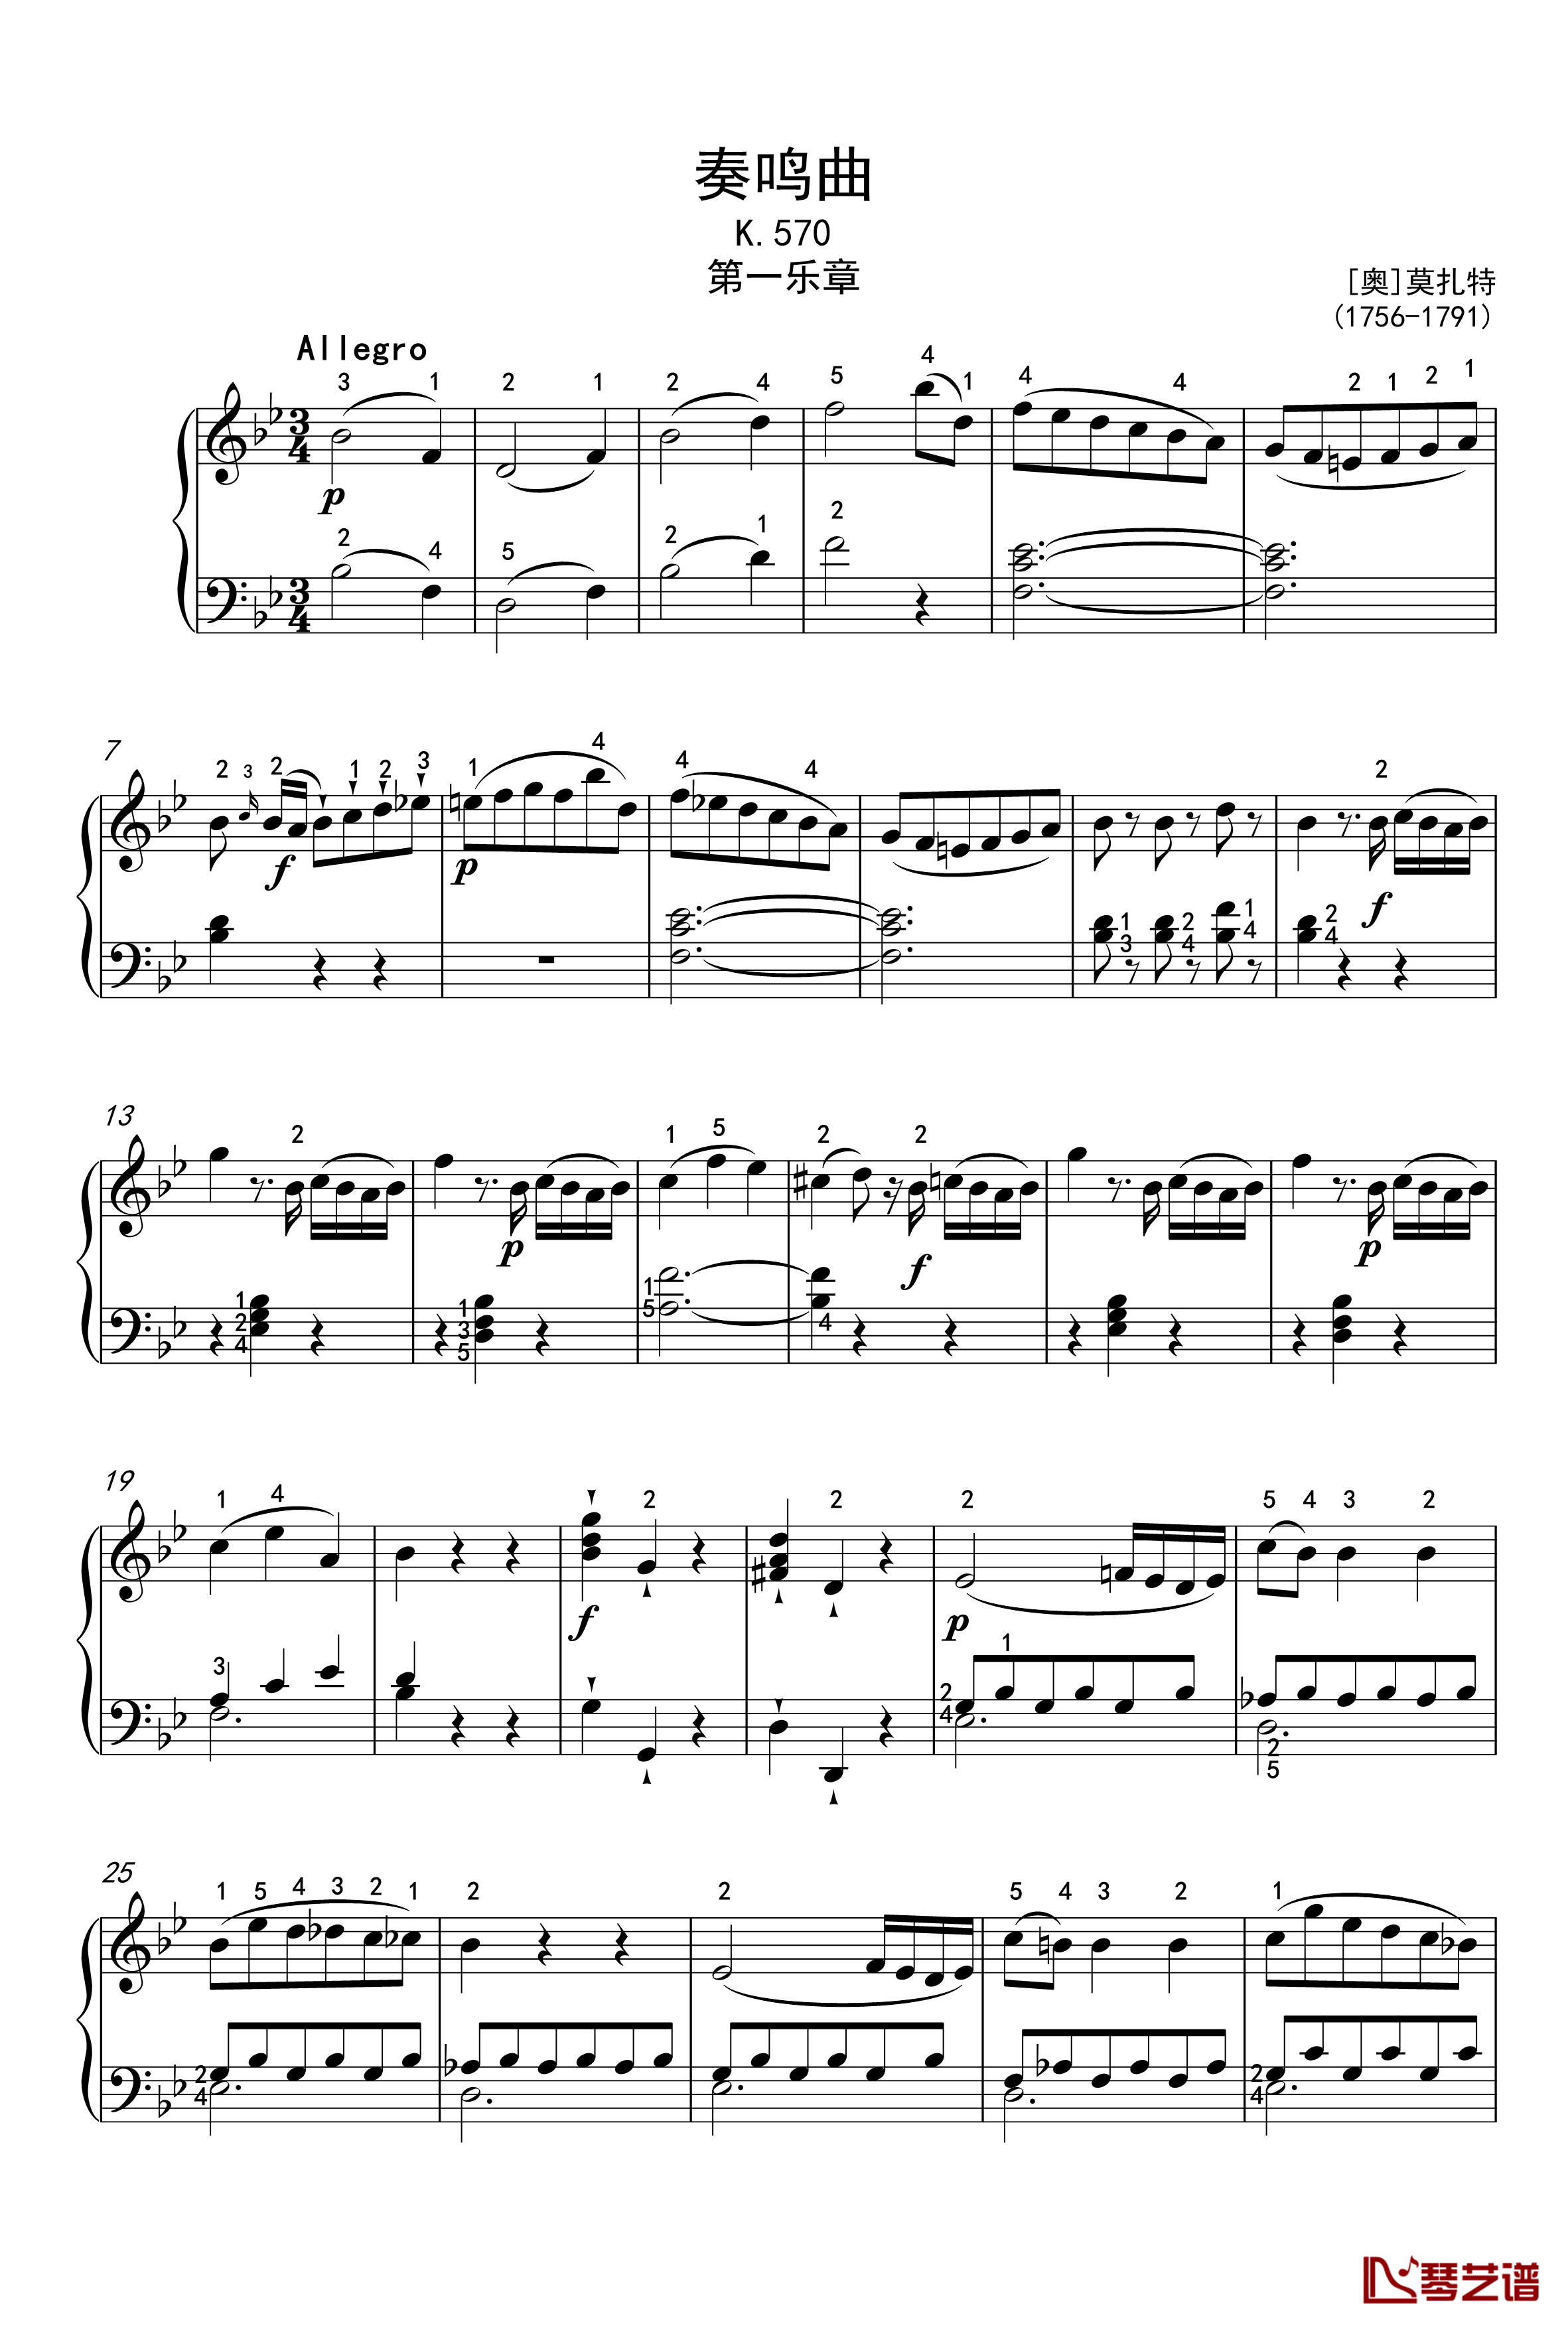 奏鸣曲钢琴谱-K-570-第一乐章-莫扎特1